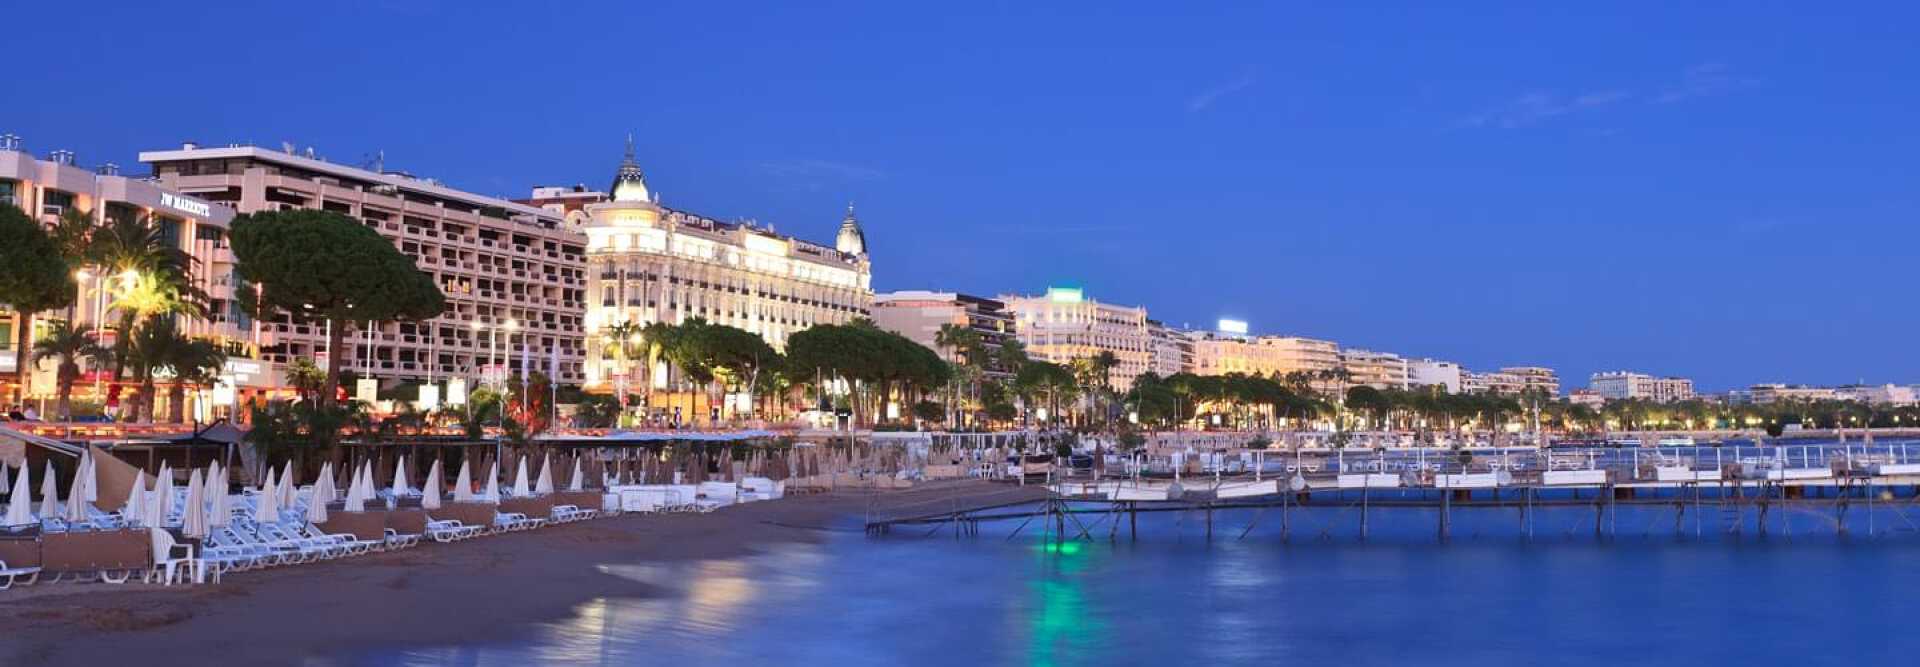 Une plage privée à Cannes de nuit avec le palace Intercontinental Carlton illuminé sur la Croisette